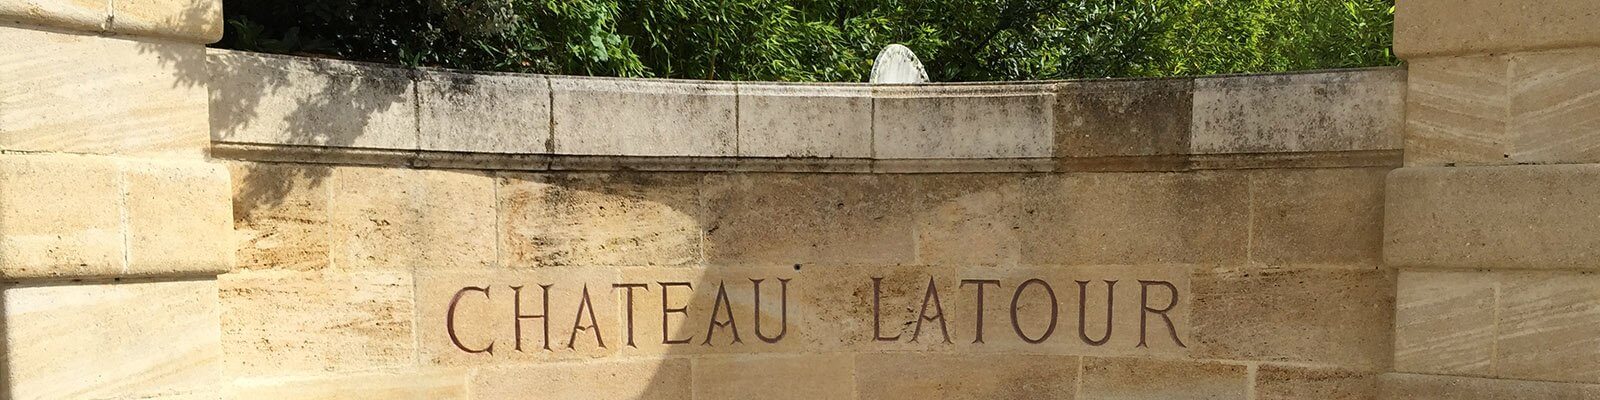 Vores samling af Château Latour - Find den hos Onshore Cellars, din leverandør af yachtvin